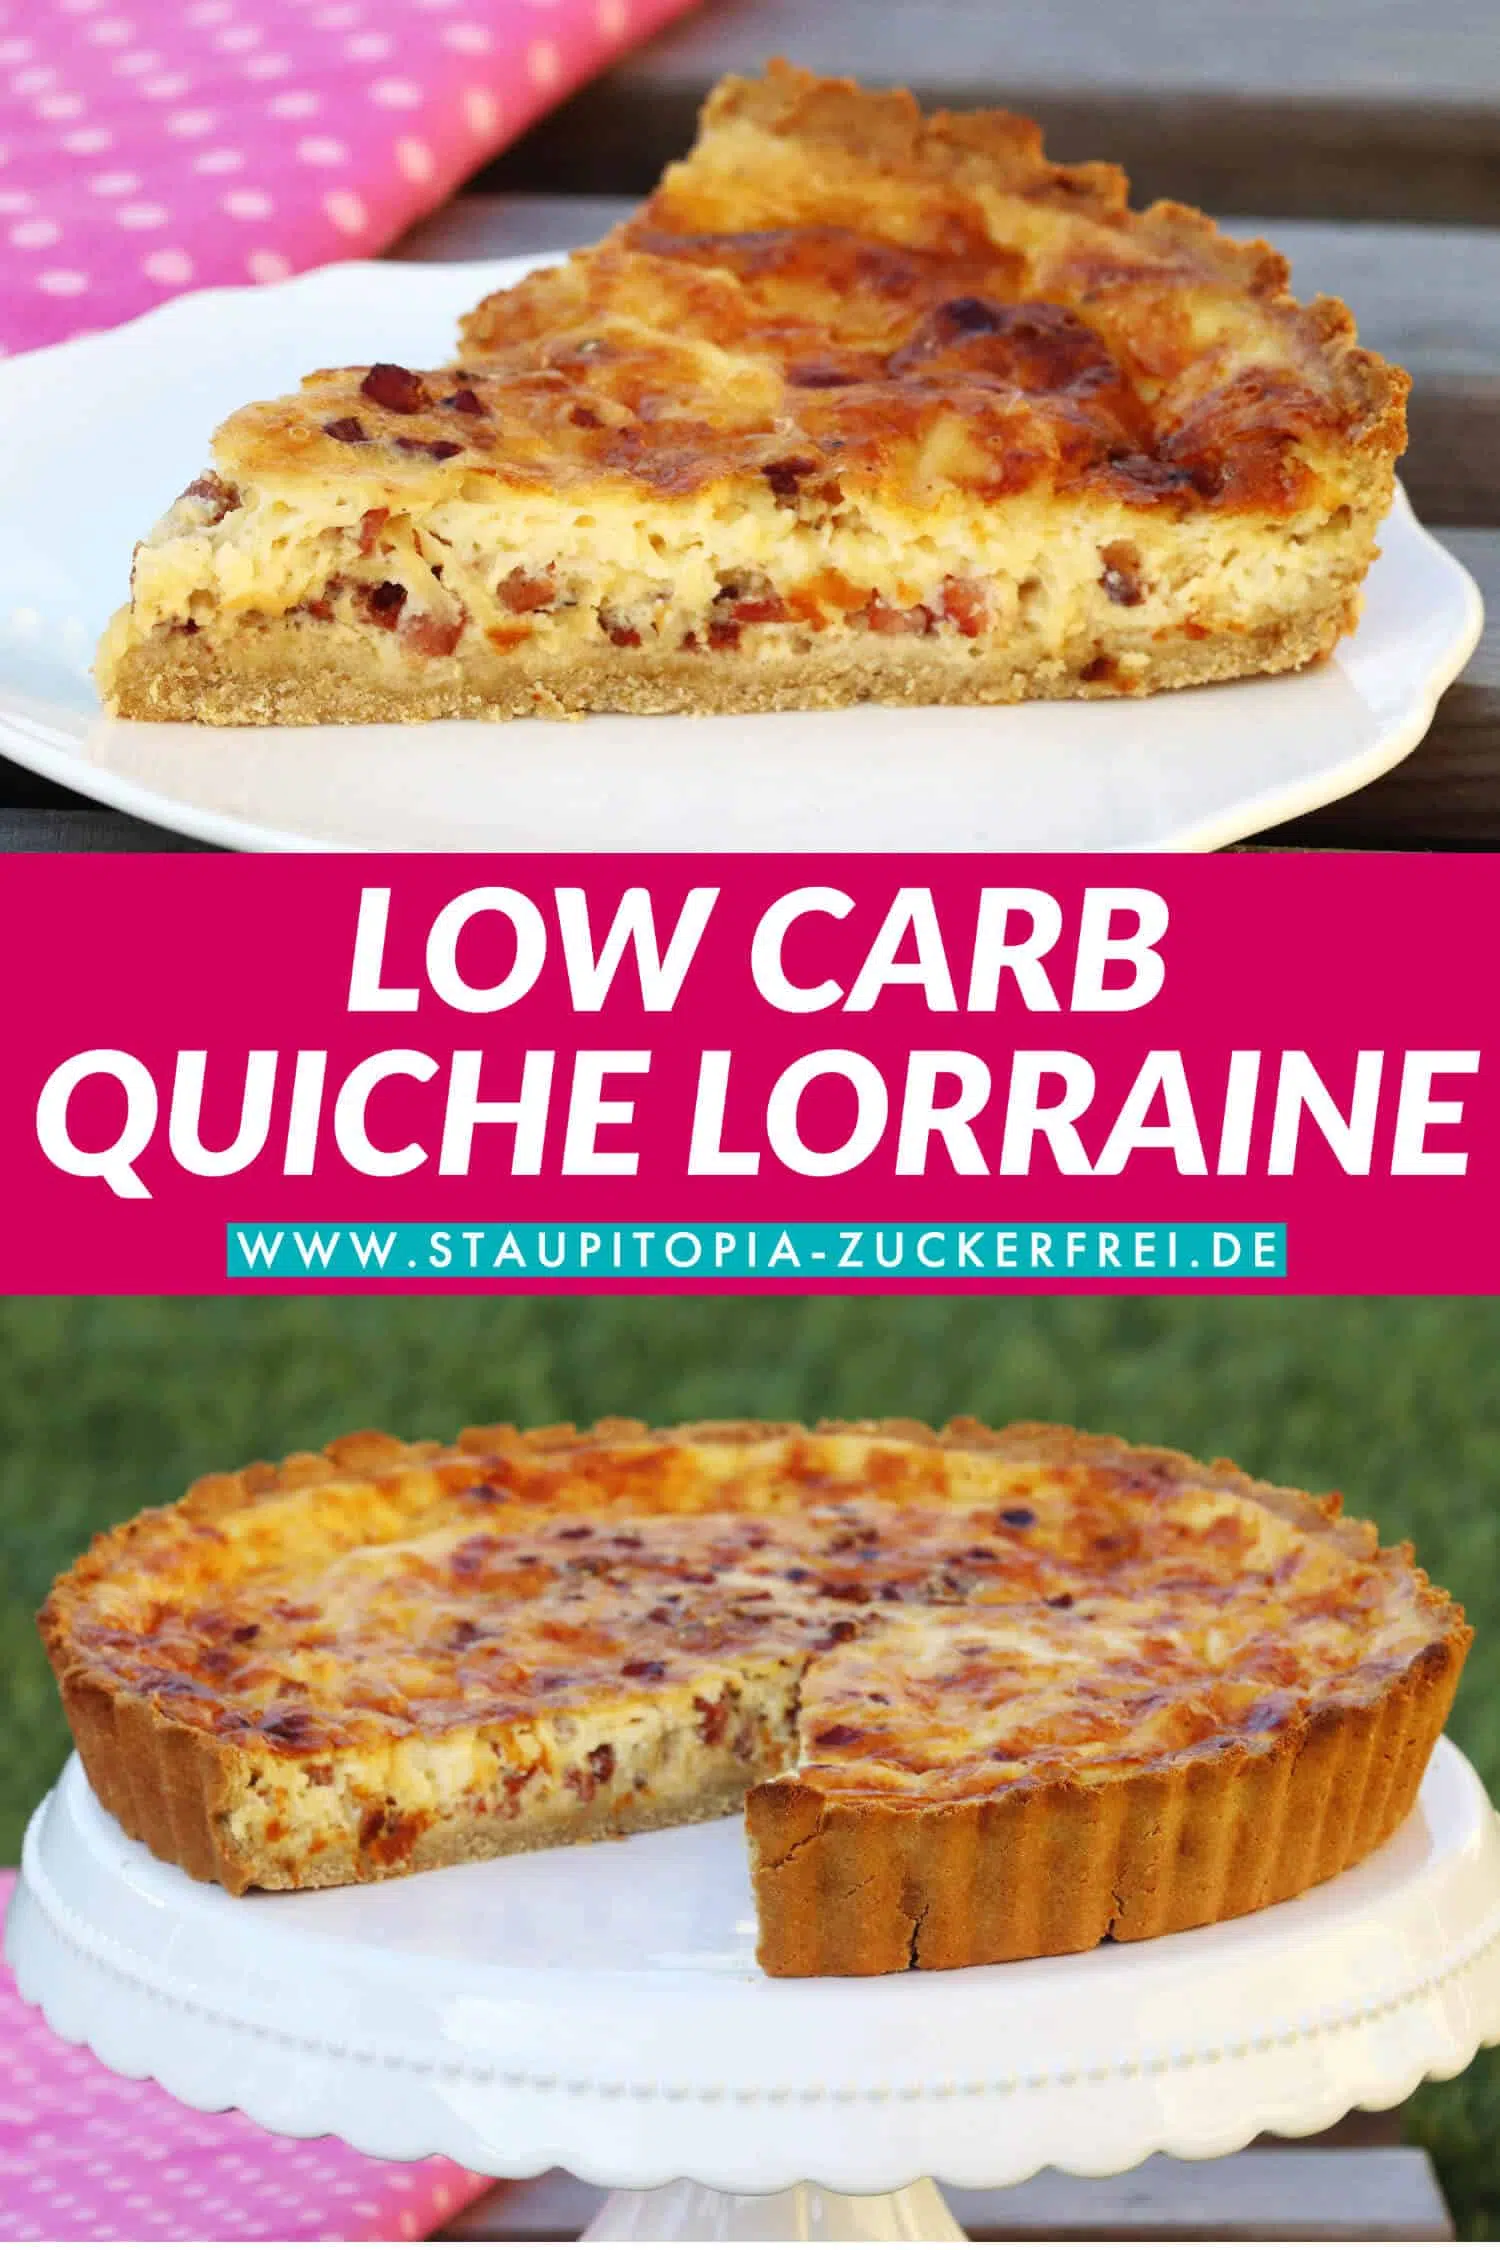 Low Carb Quiche Lorraine selber machen - Herzhafter Low Carb Kuchen ohne Mehl